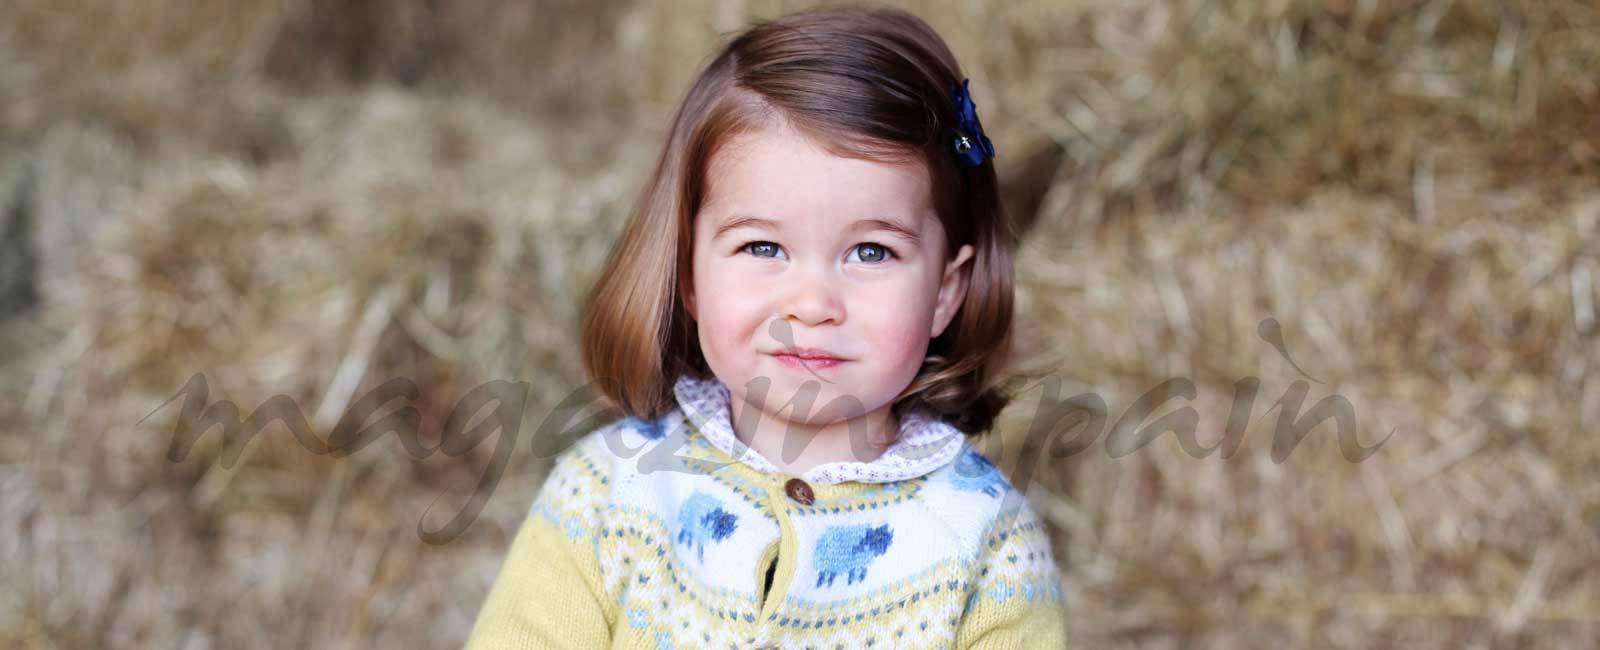 La princesa Charlotte cumple 2 años… ¡Felicidades!